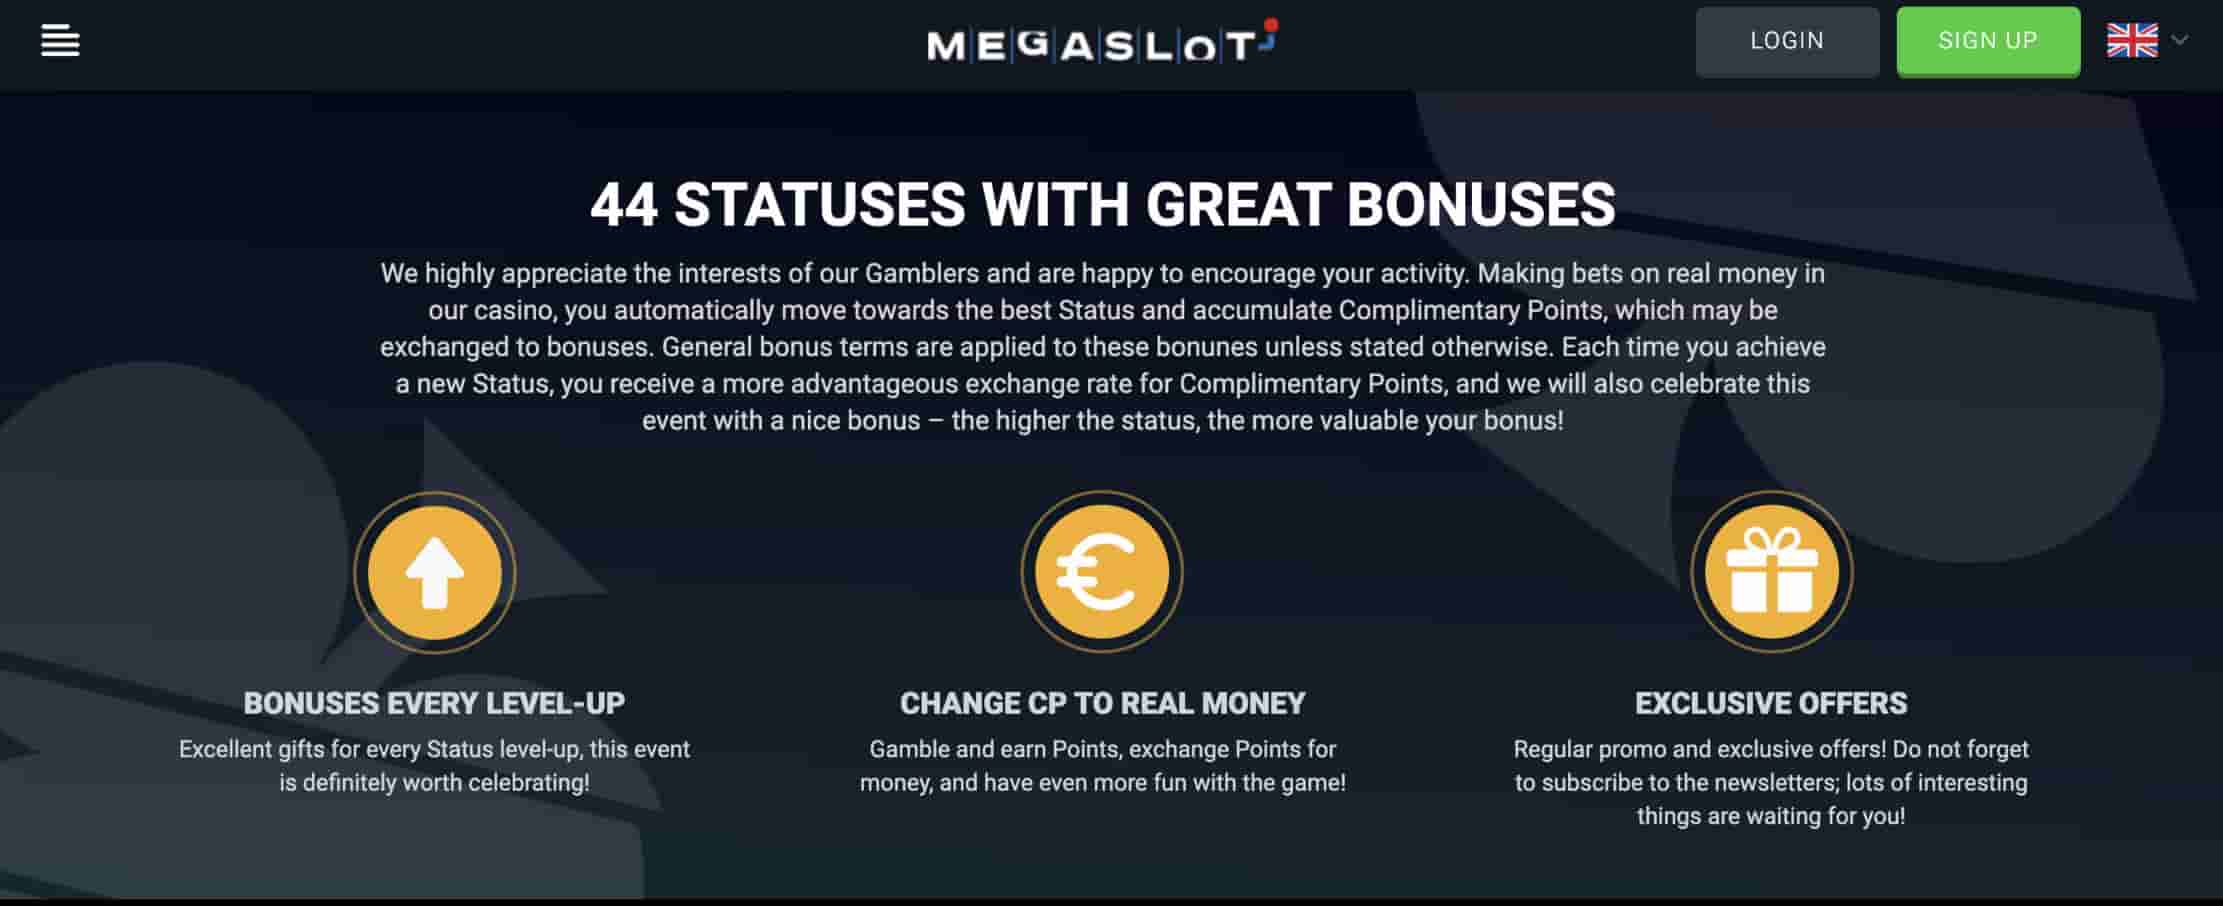 Megaslot bonus statuses